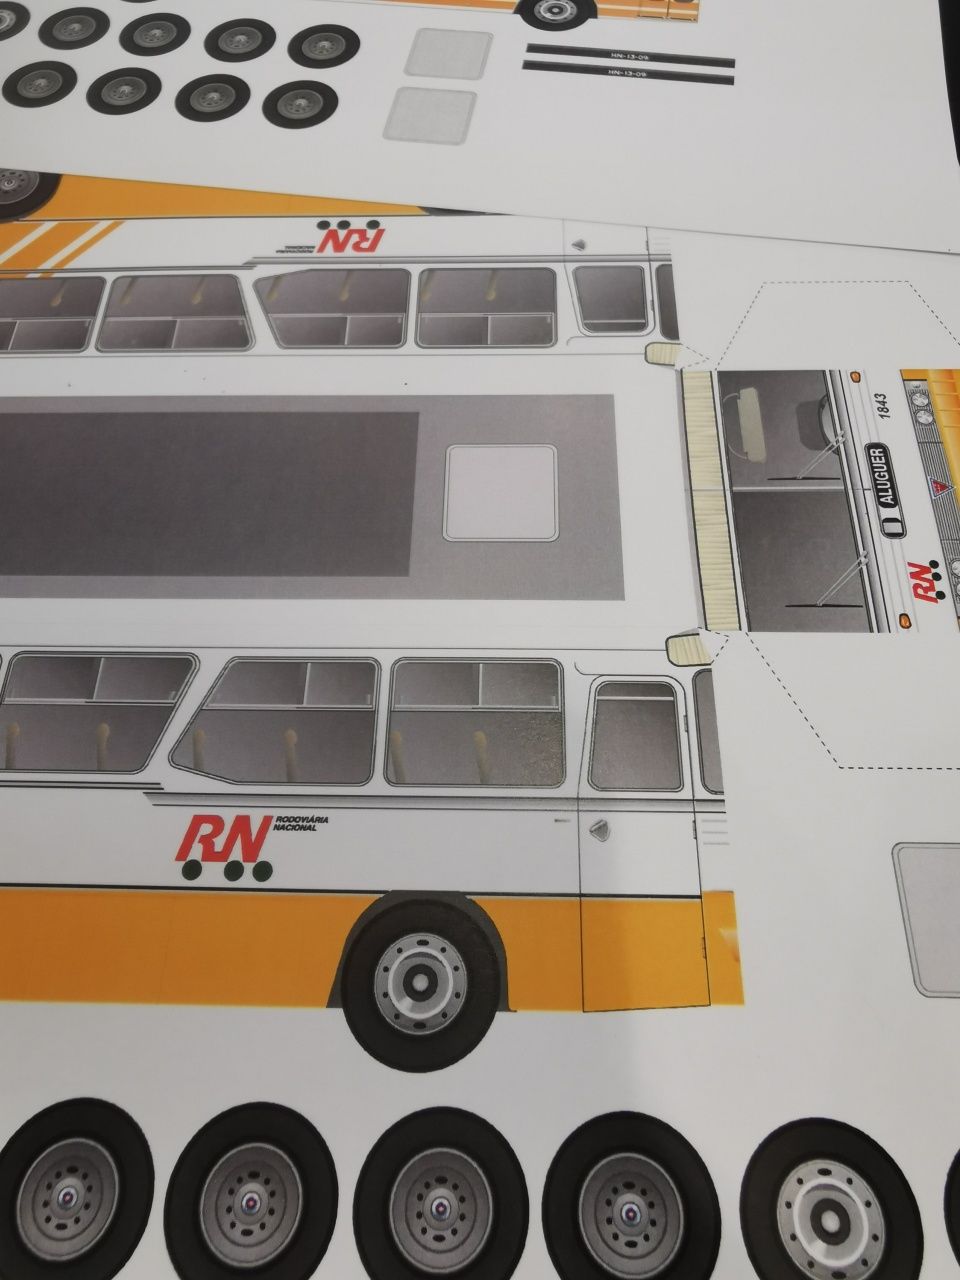 Autocarros RN e EVA x4 em cartolina A4 para recortar